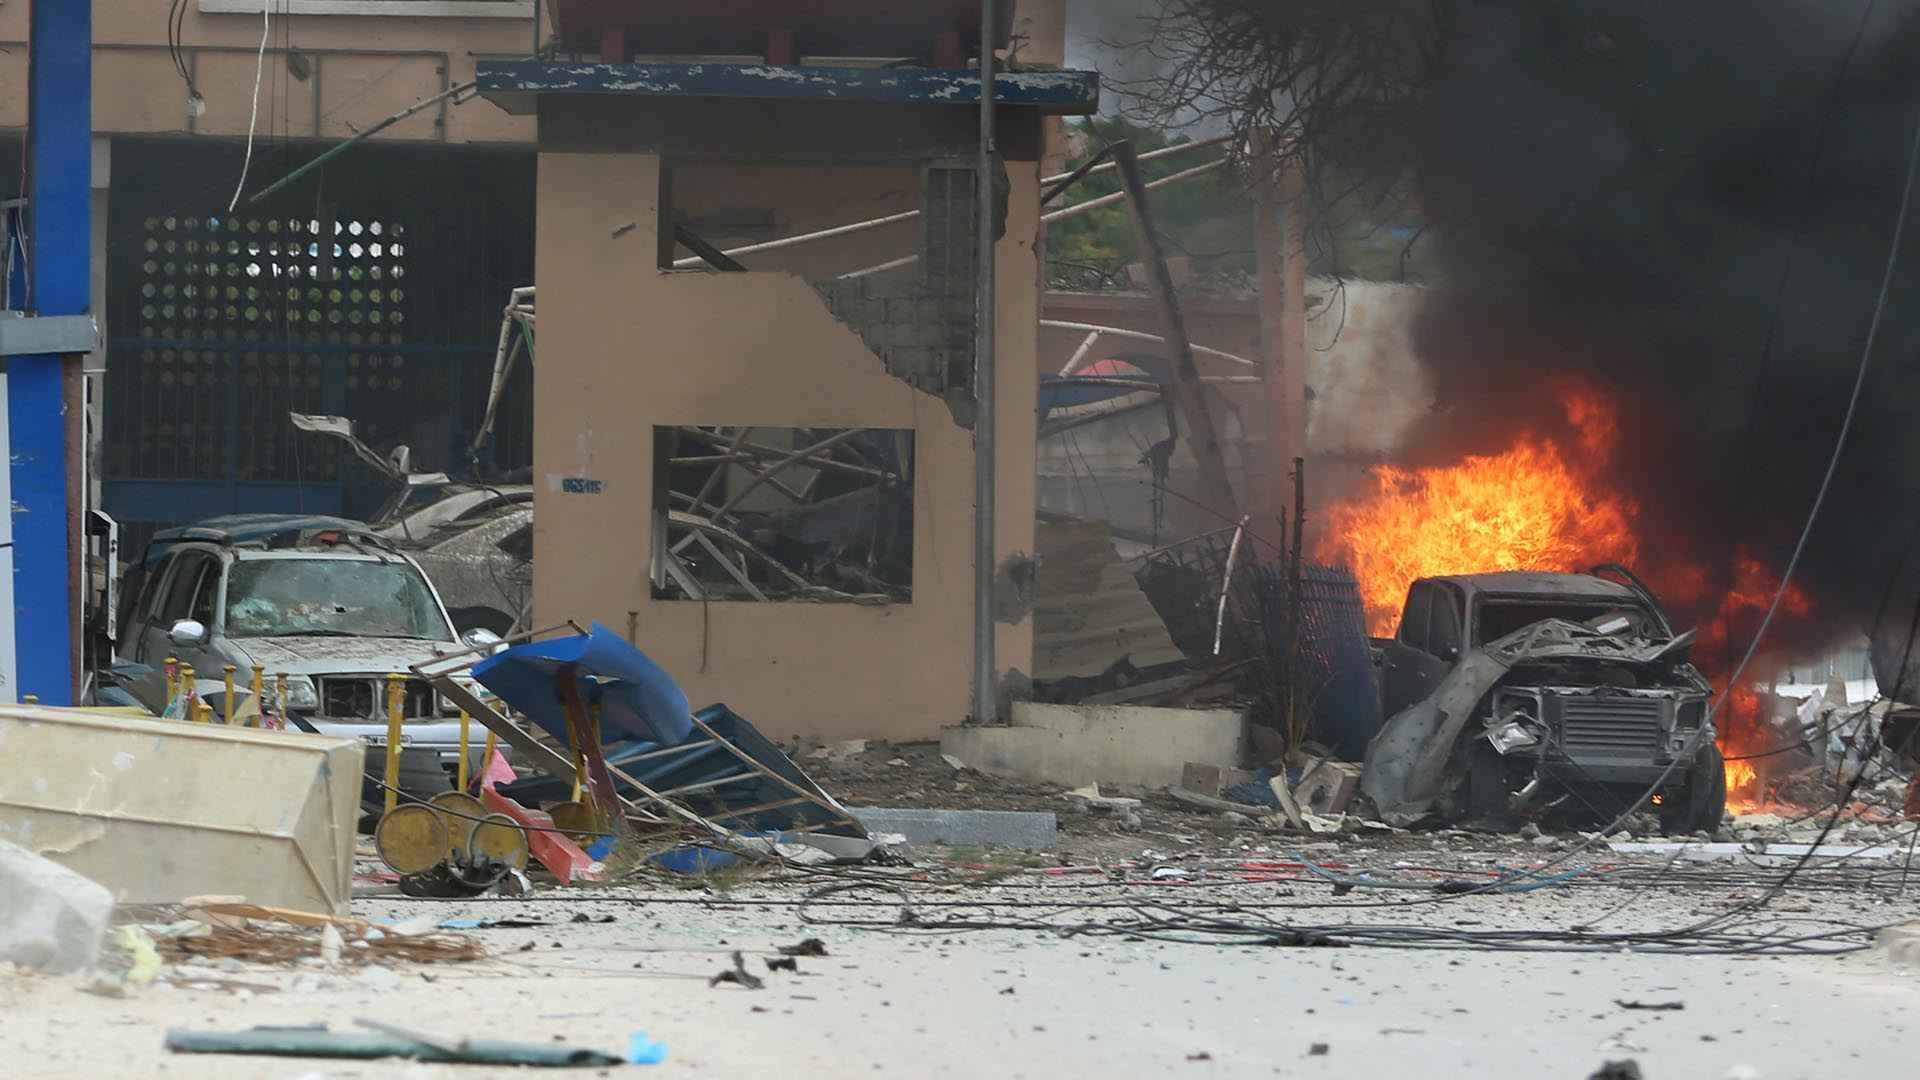 Los responsables fueron atacantes del grupo islamista Al Shabaab. Al menos 20 personas resultaron heridas de gravedad